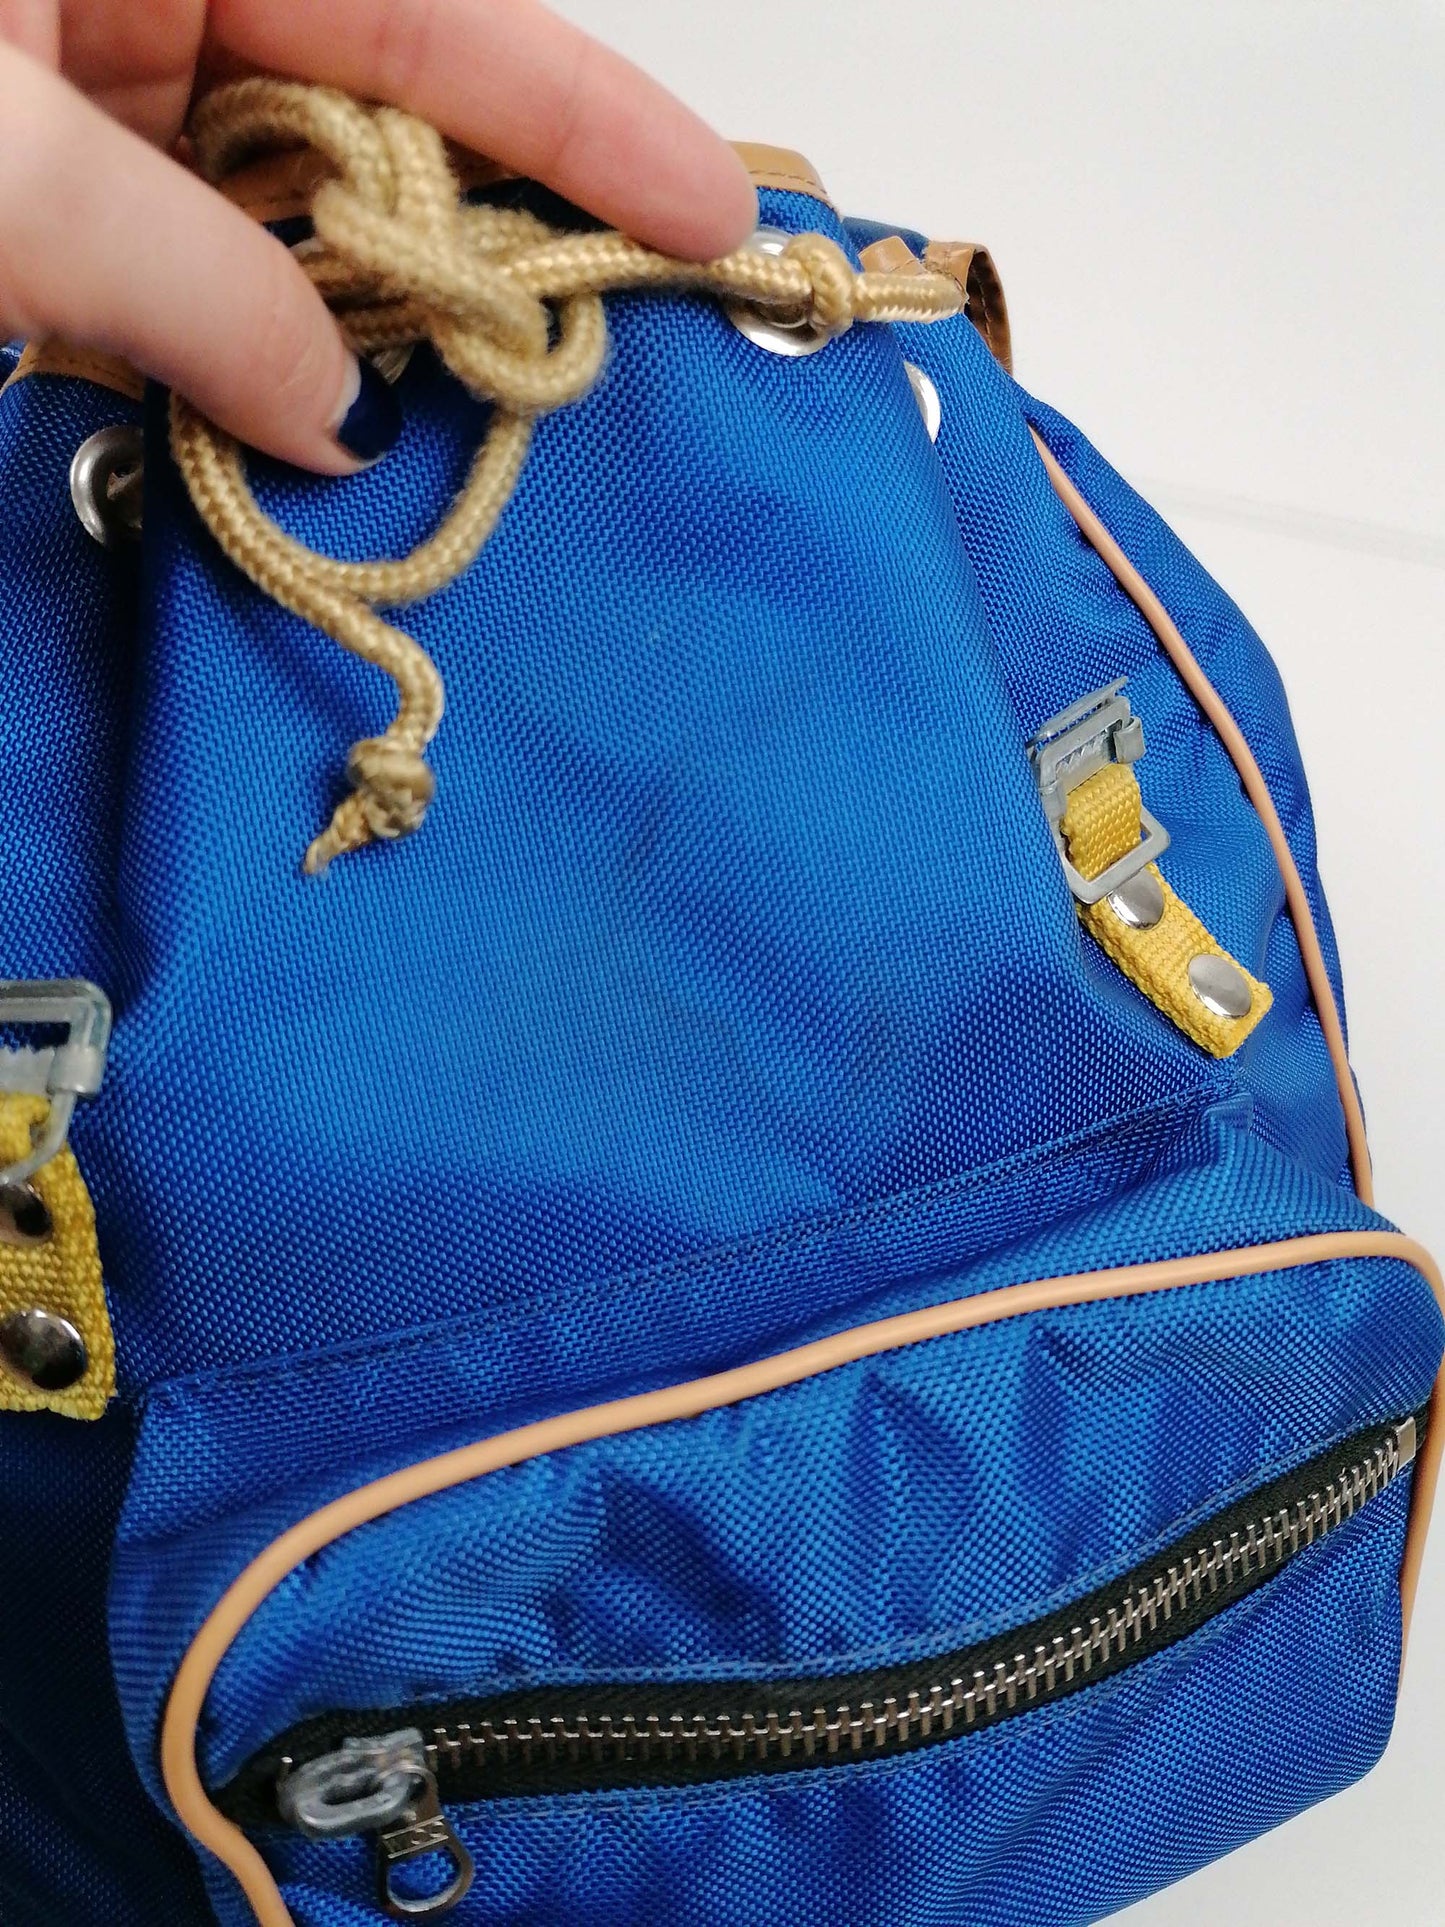 Vintage 70's Blue Nylon Small Backpack Rucksack